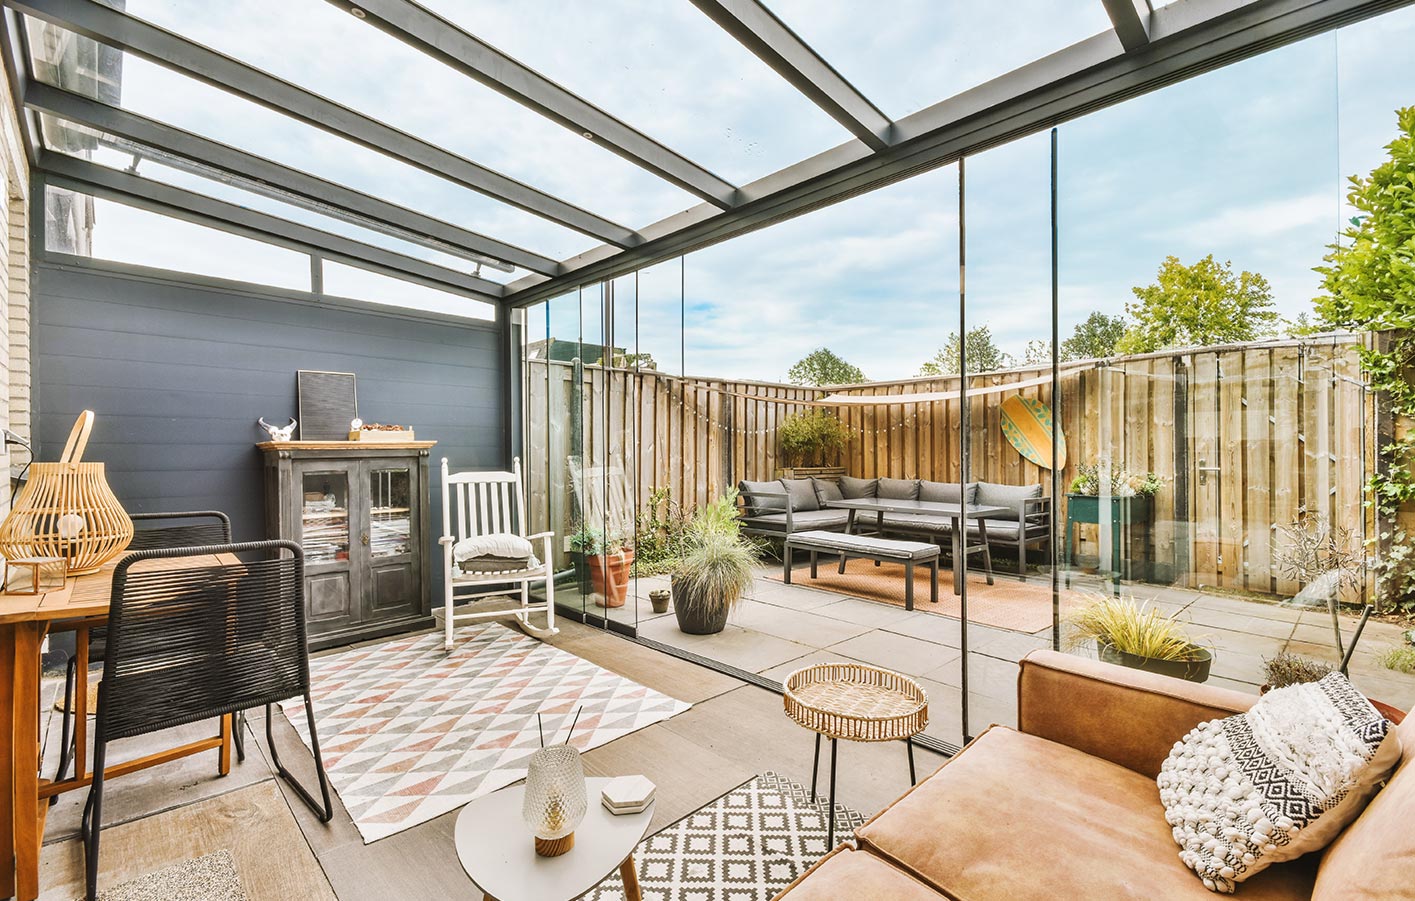 Überdachte Terrasse als erweitertes Wohnzimmer mit Möbeln und dekorativen Elementen